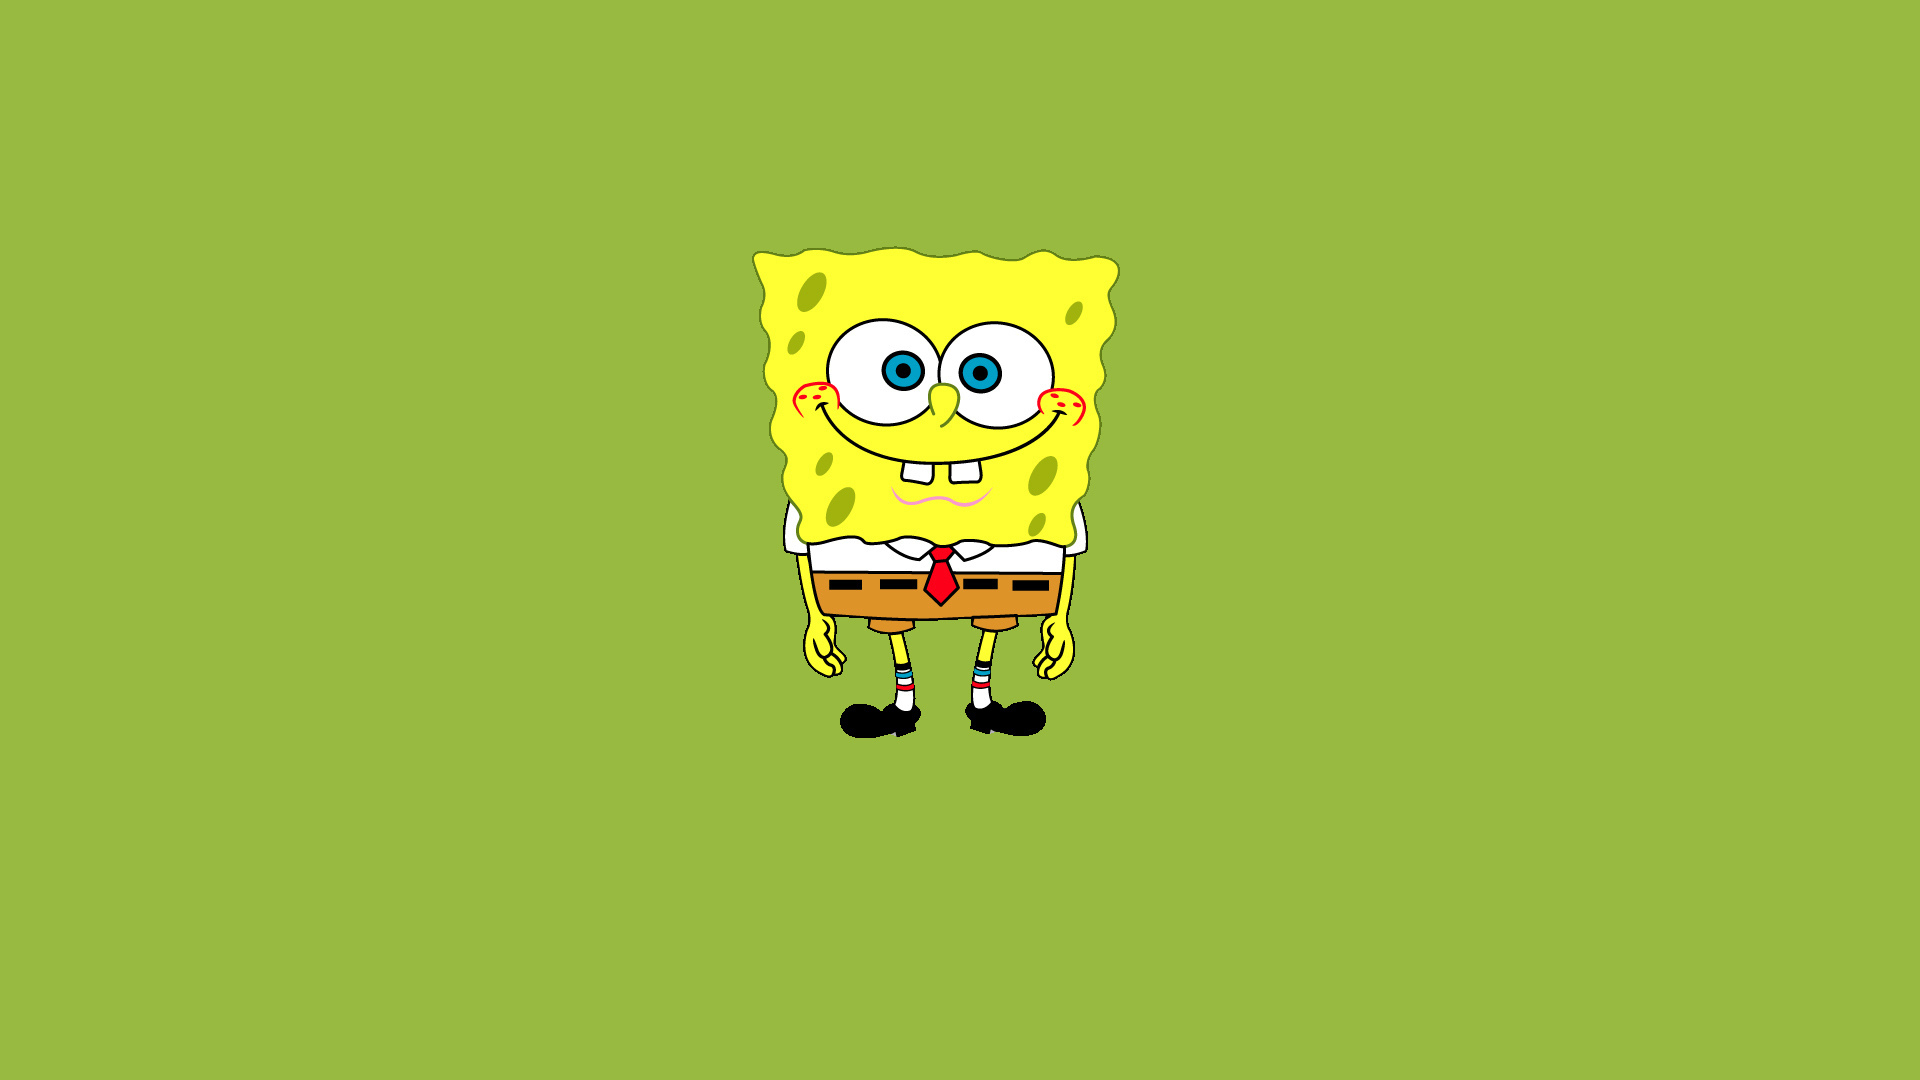 Cool Spongebob Squarepants Wallpaper